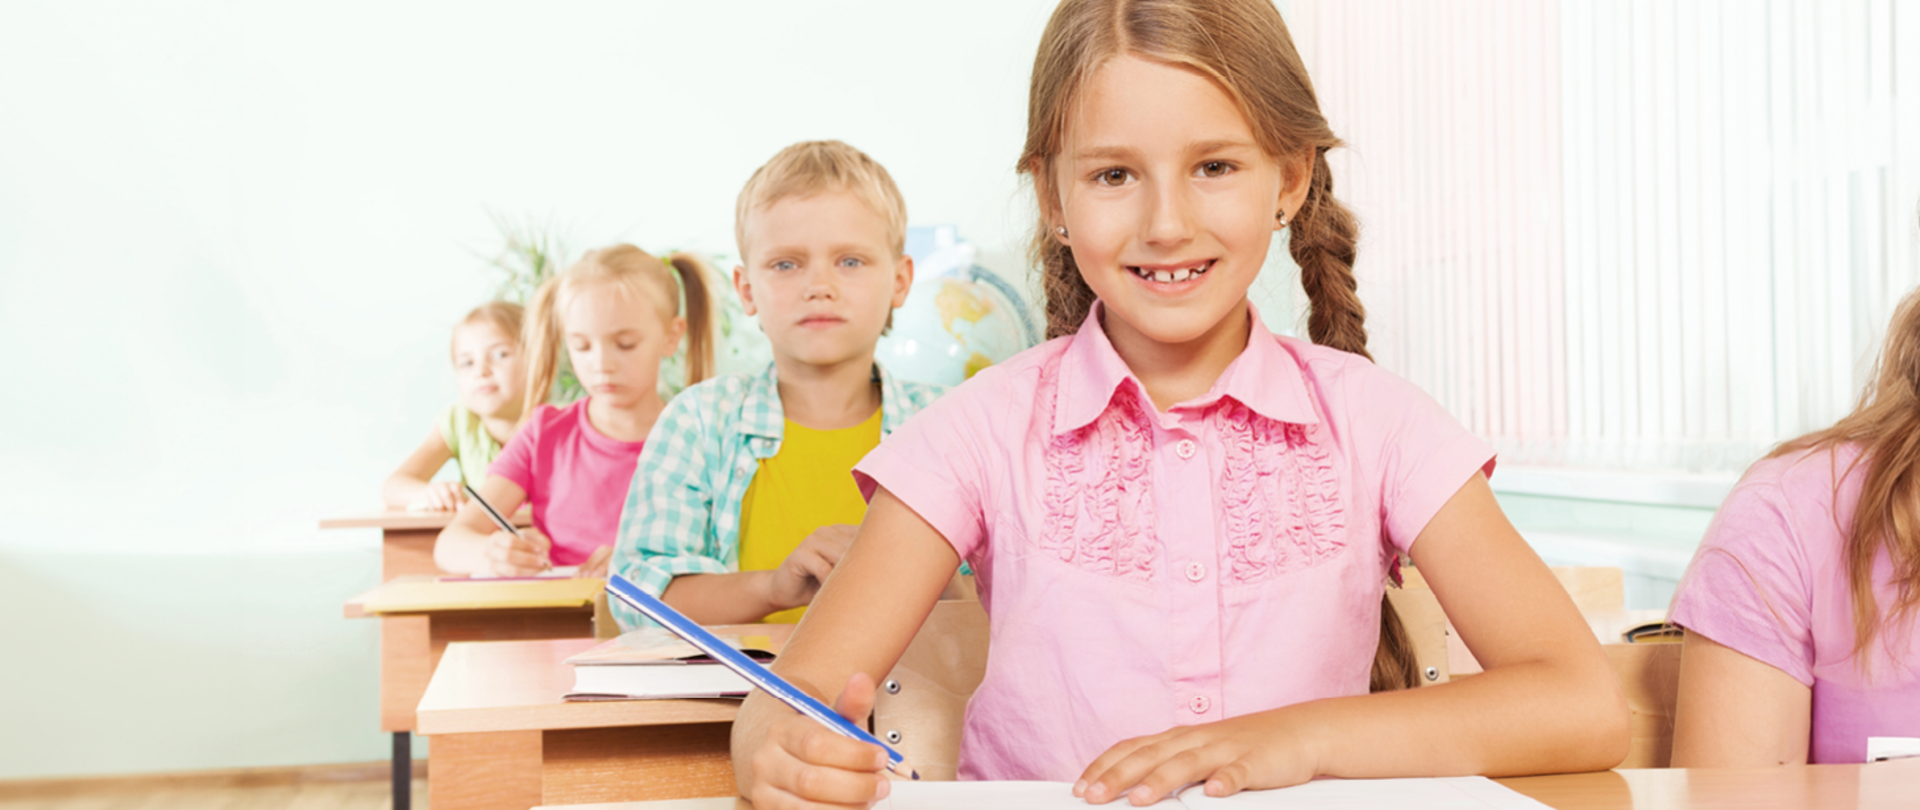 Uczniowie w klasie siedzą w ławkach. Na pierwszym planie dziewczynka w różowej bluzce.